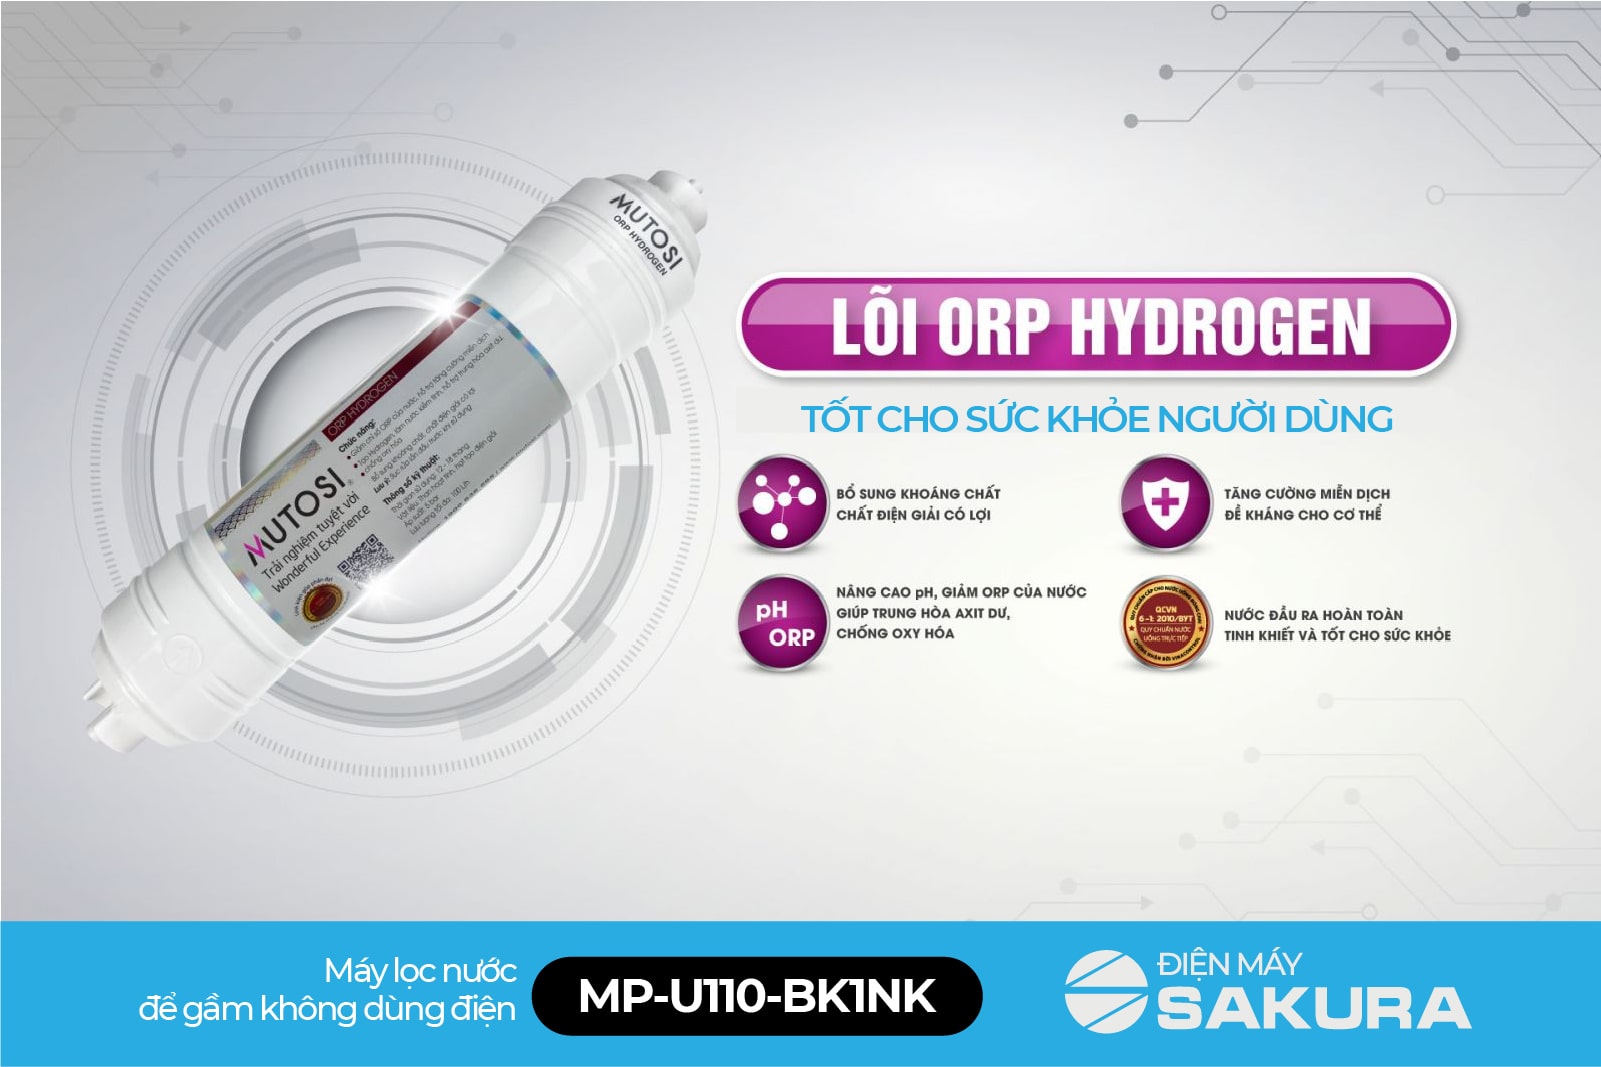 Lõi ORP Hydrogen tốt cho sức khỏe người dùng